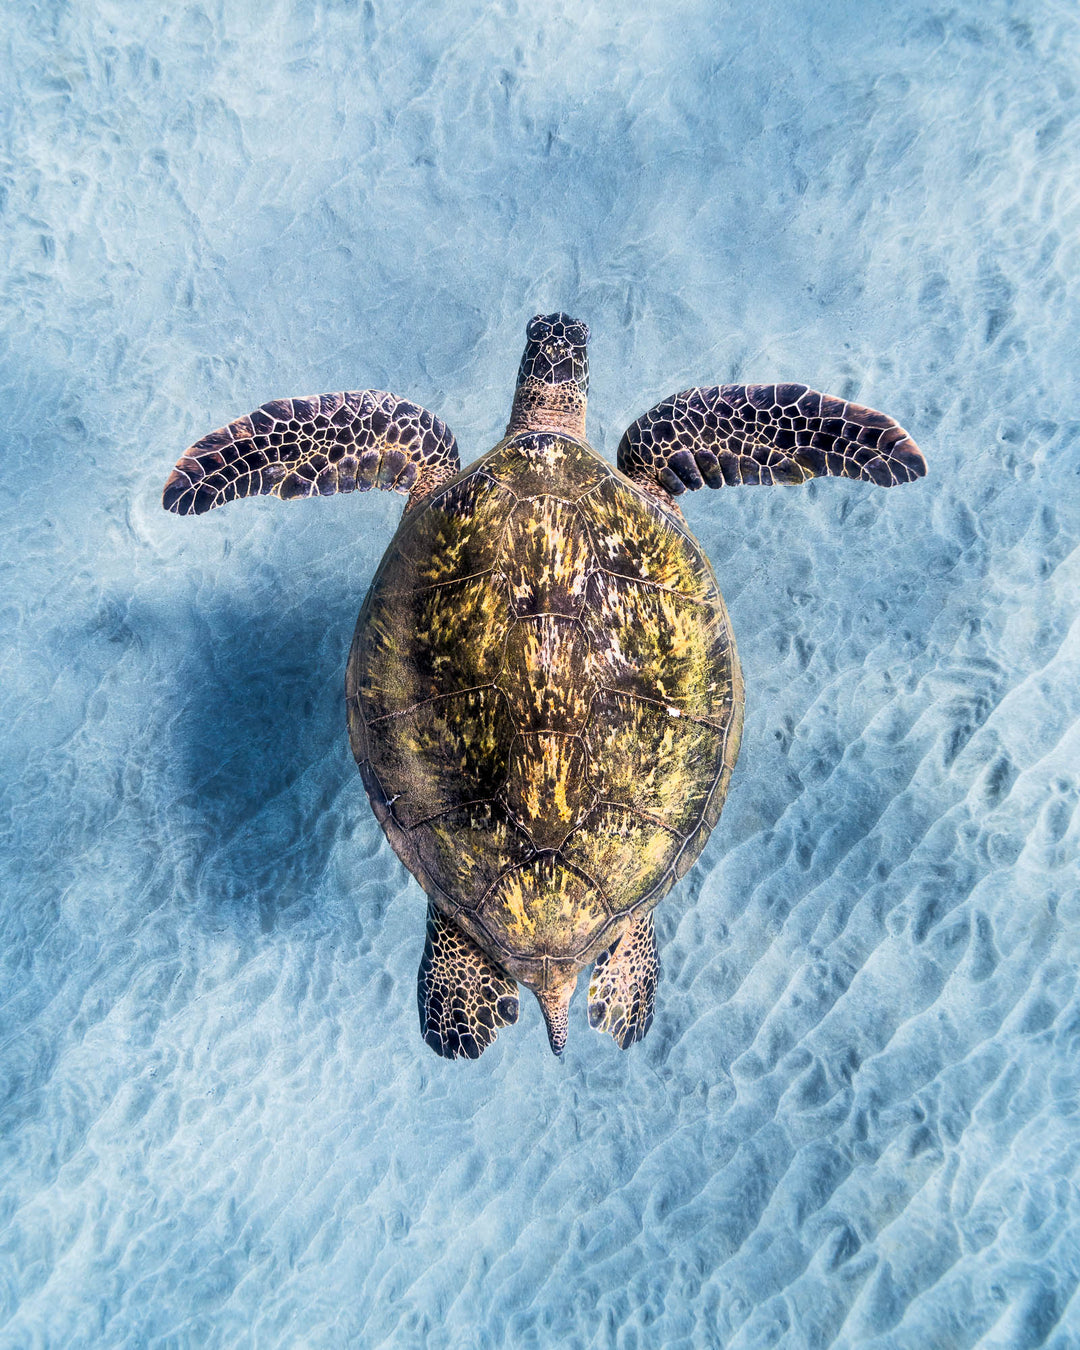 Green sea turtle off the coast of Maui